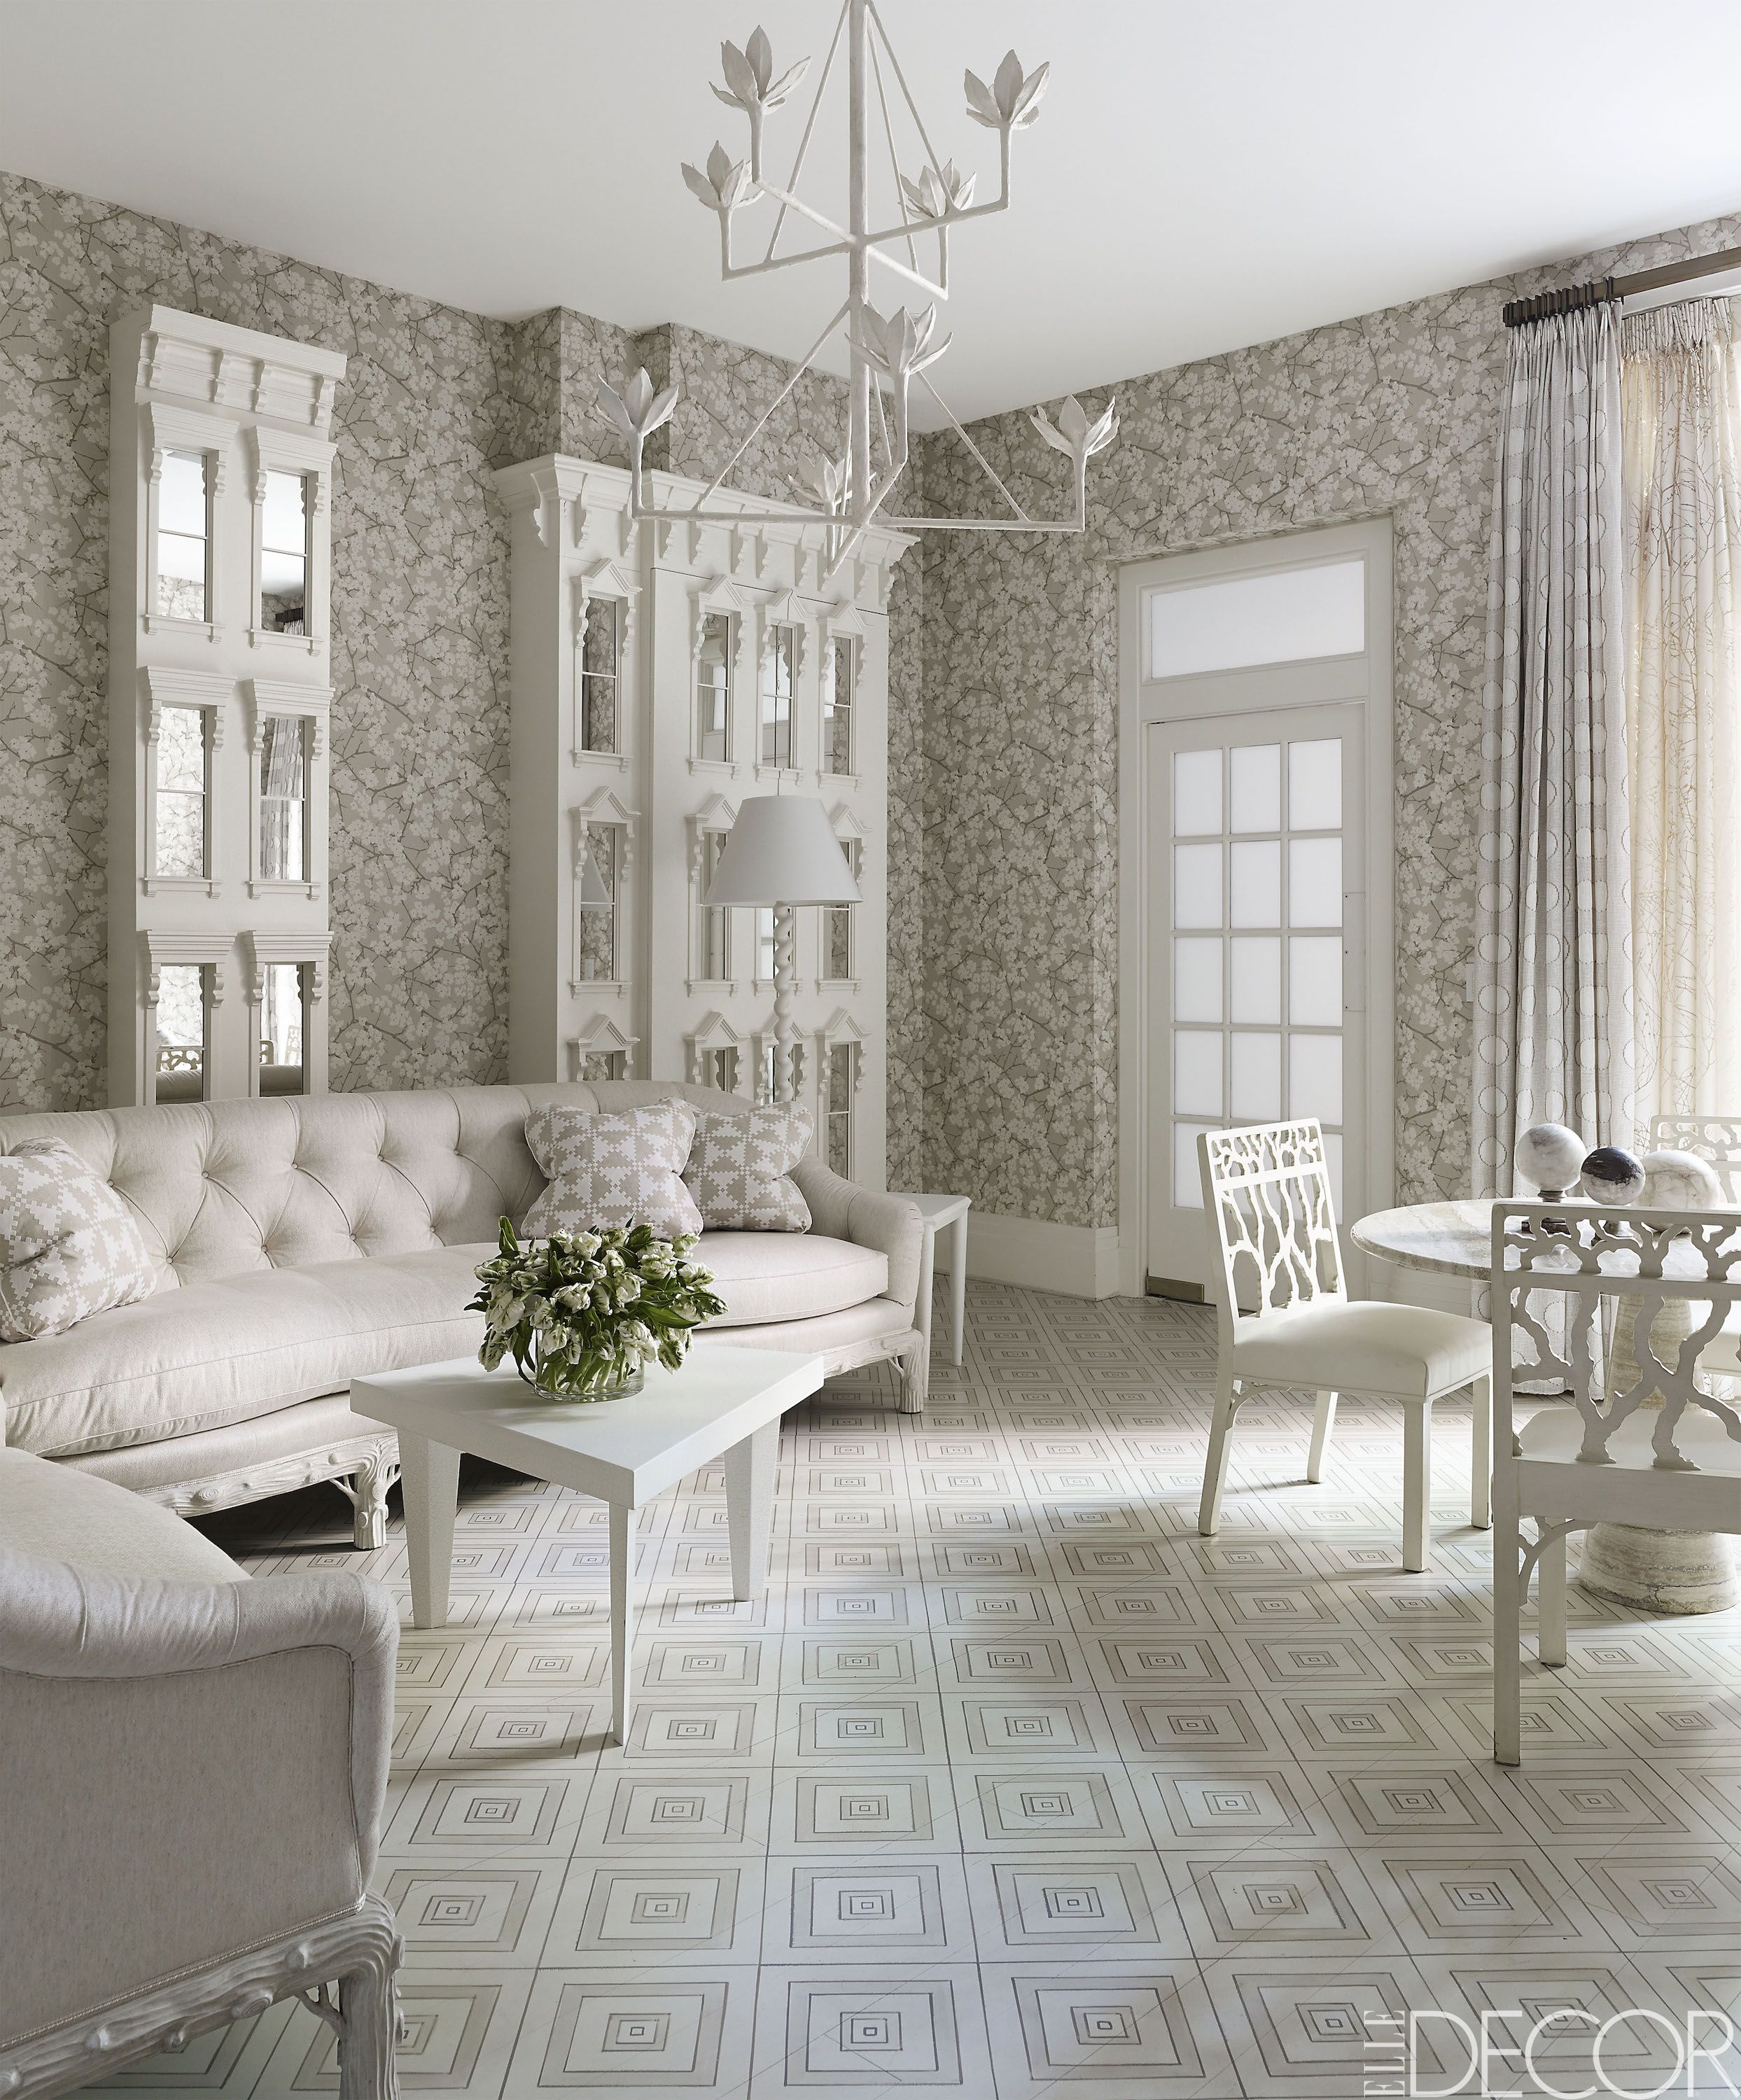 20 White Living Room Furniture Ideas, White Living Room Table